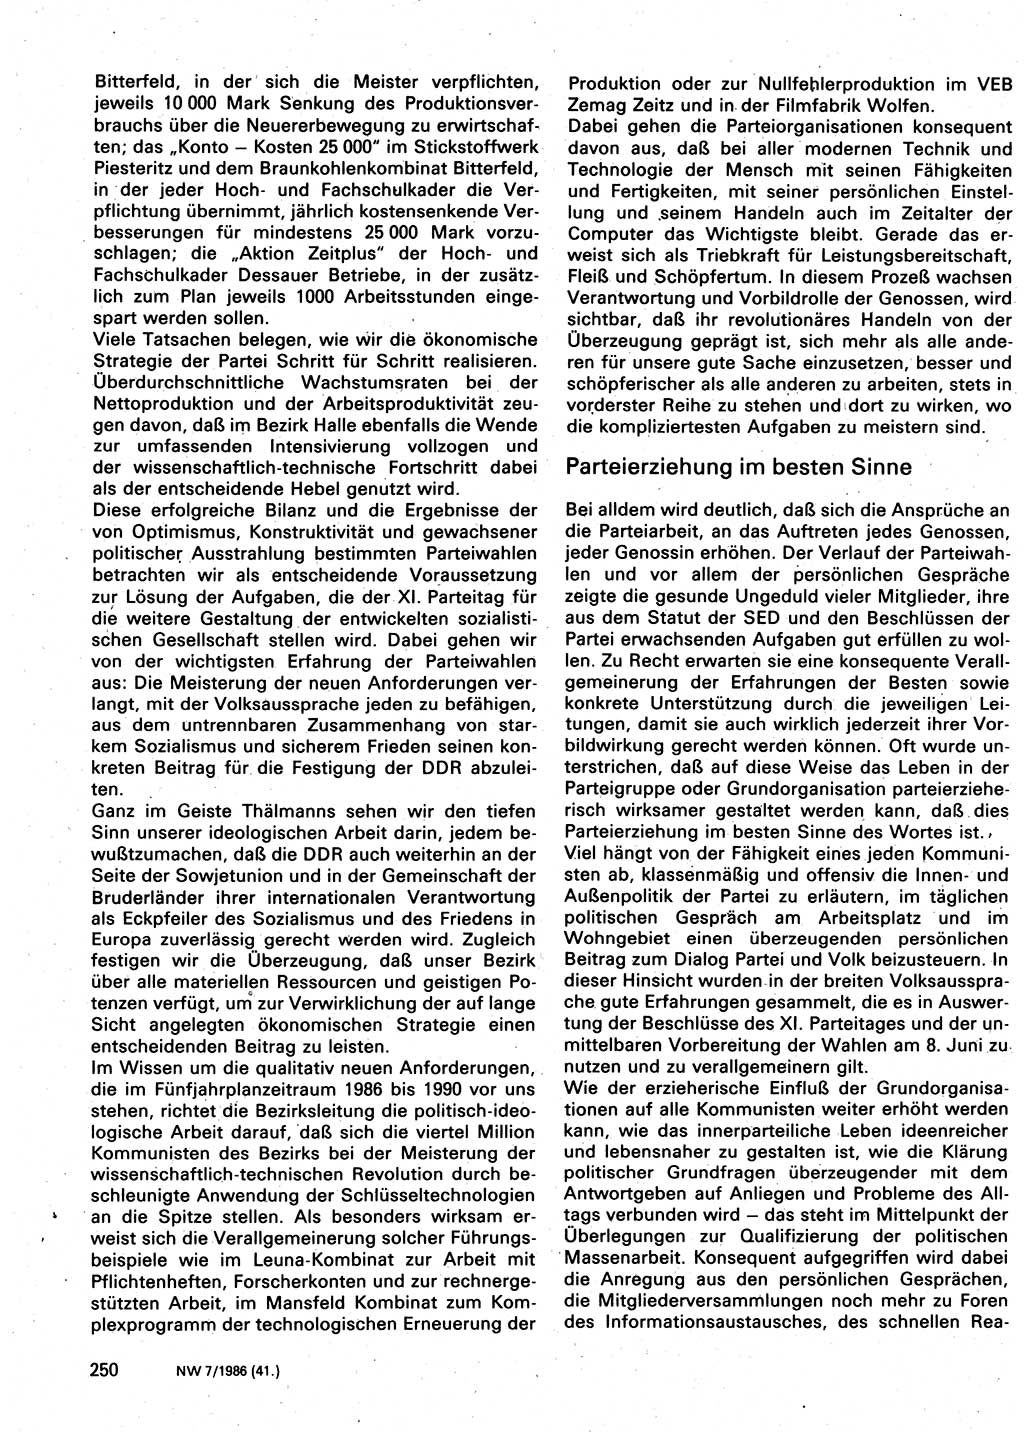 Neuer Weg (NW), Organ des Zentralkomitees (ZK) der SED (Sozialistische Einheitspartei Deutschlands) für Fragen des Parteilebens, 41. Jahrgang [Deutsche Demokratische Republik (DDR)] 1986, Seite 250 (NW ZK SED DDR 1986, S. 250)